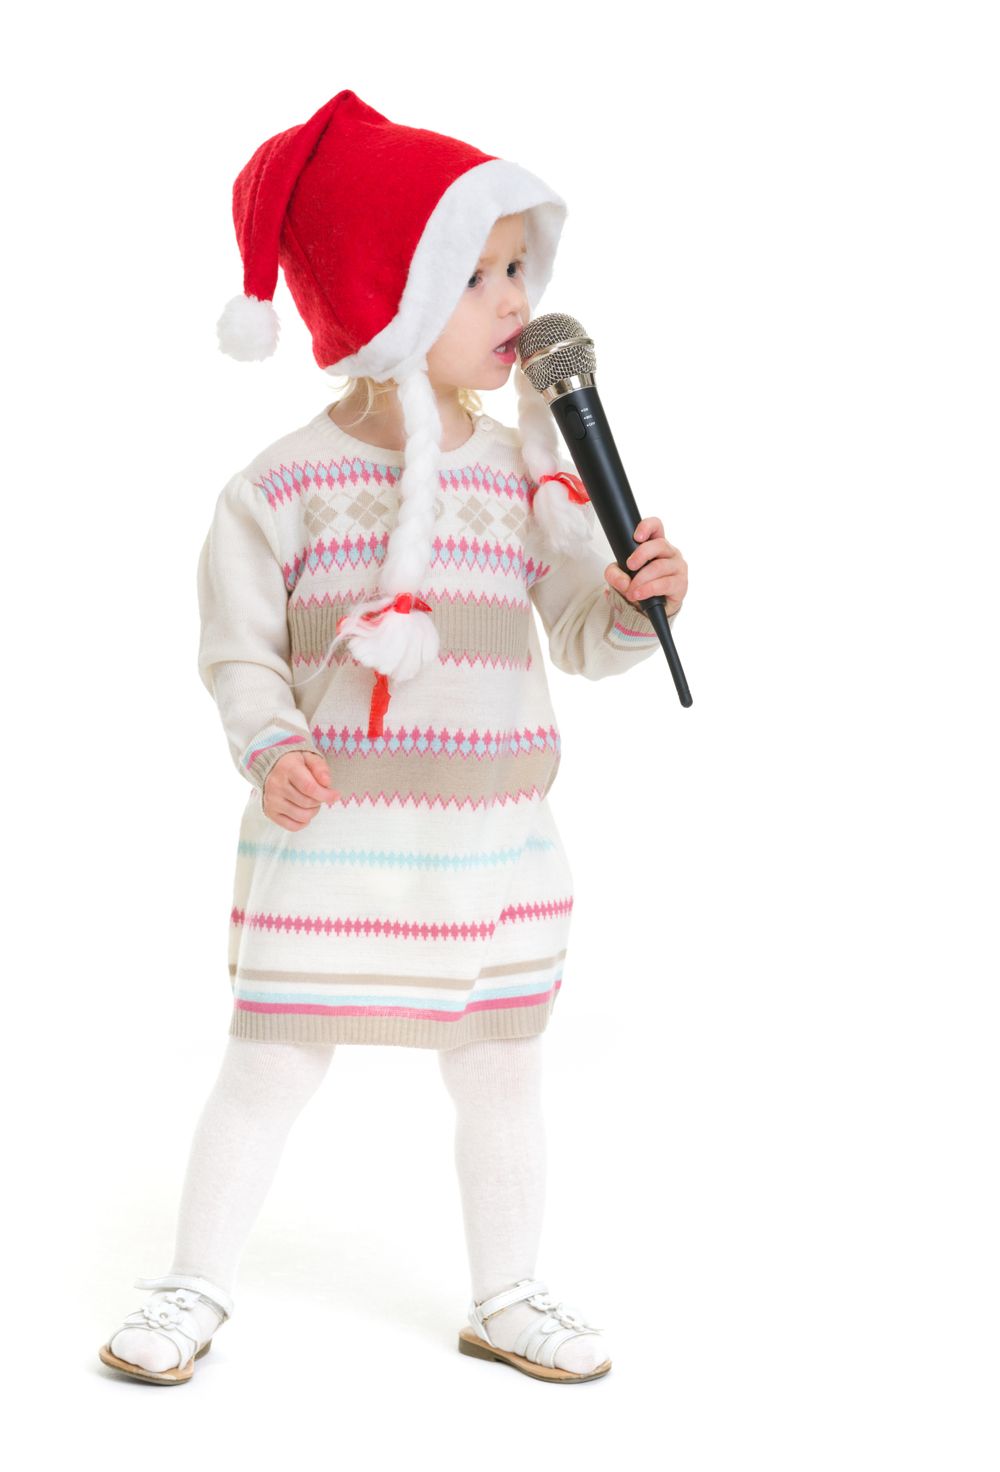 Capodanno in casa con i bambini cantare